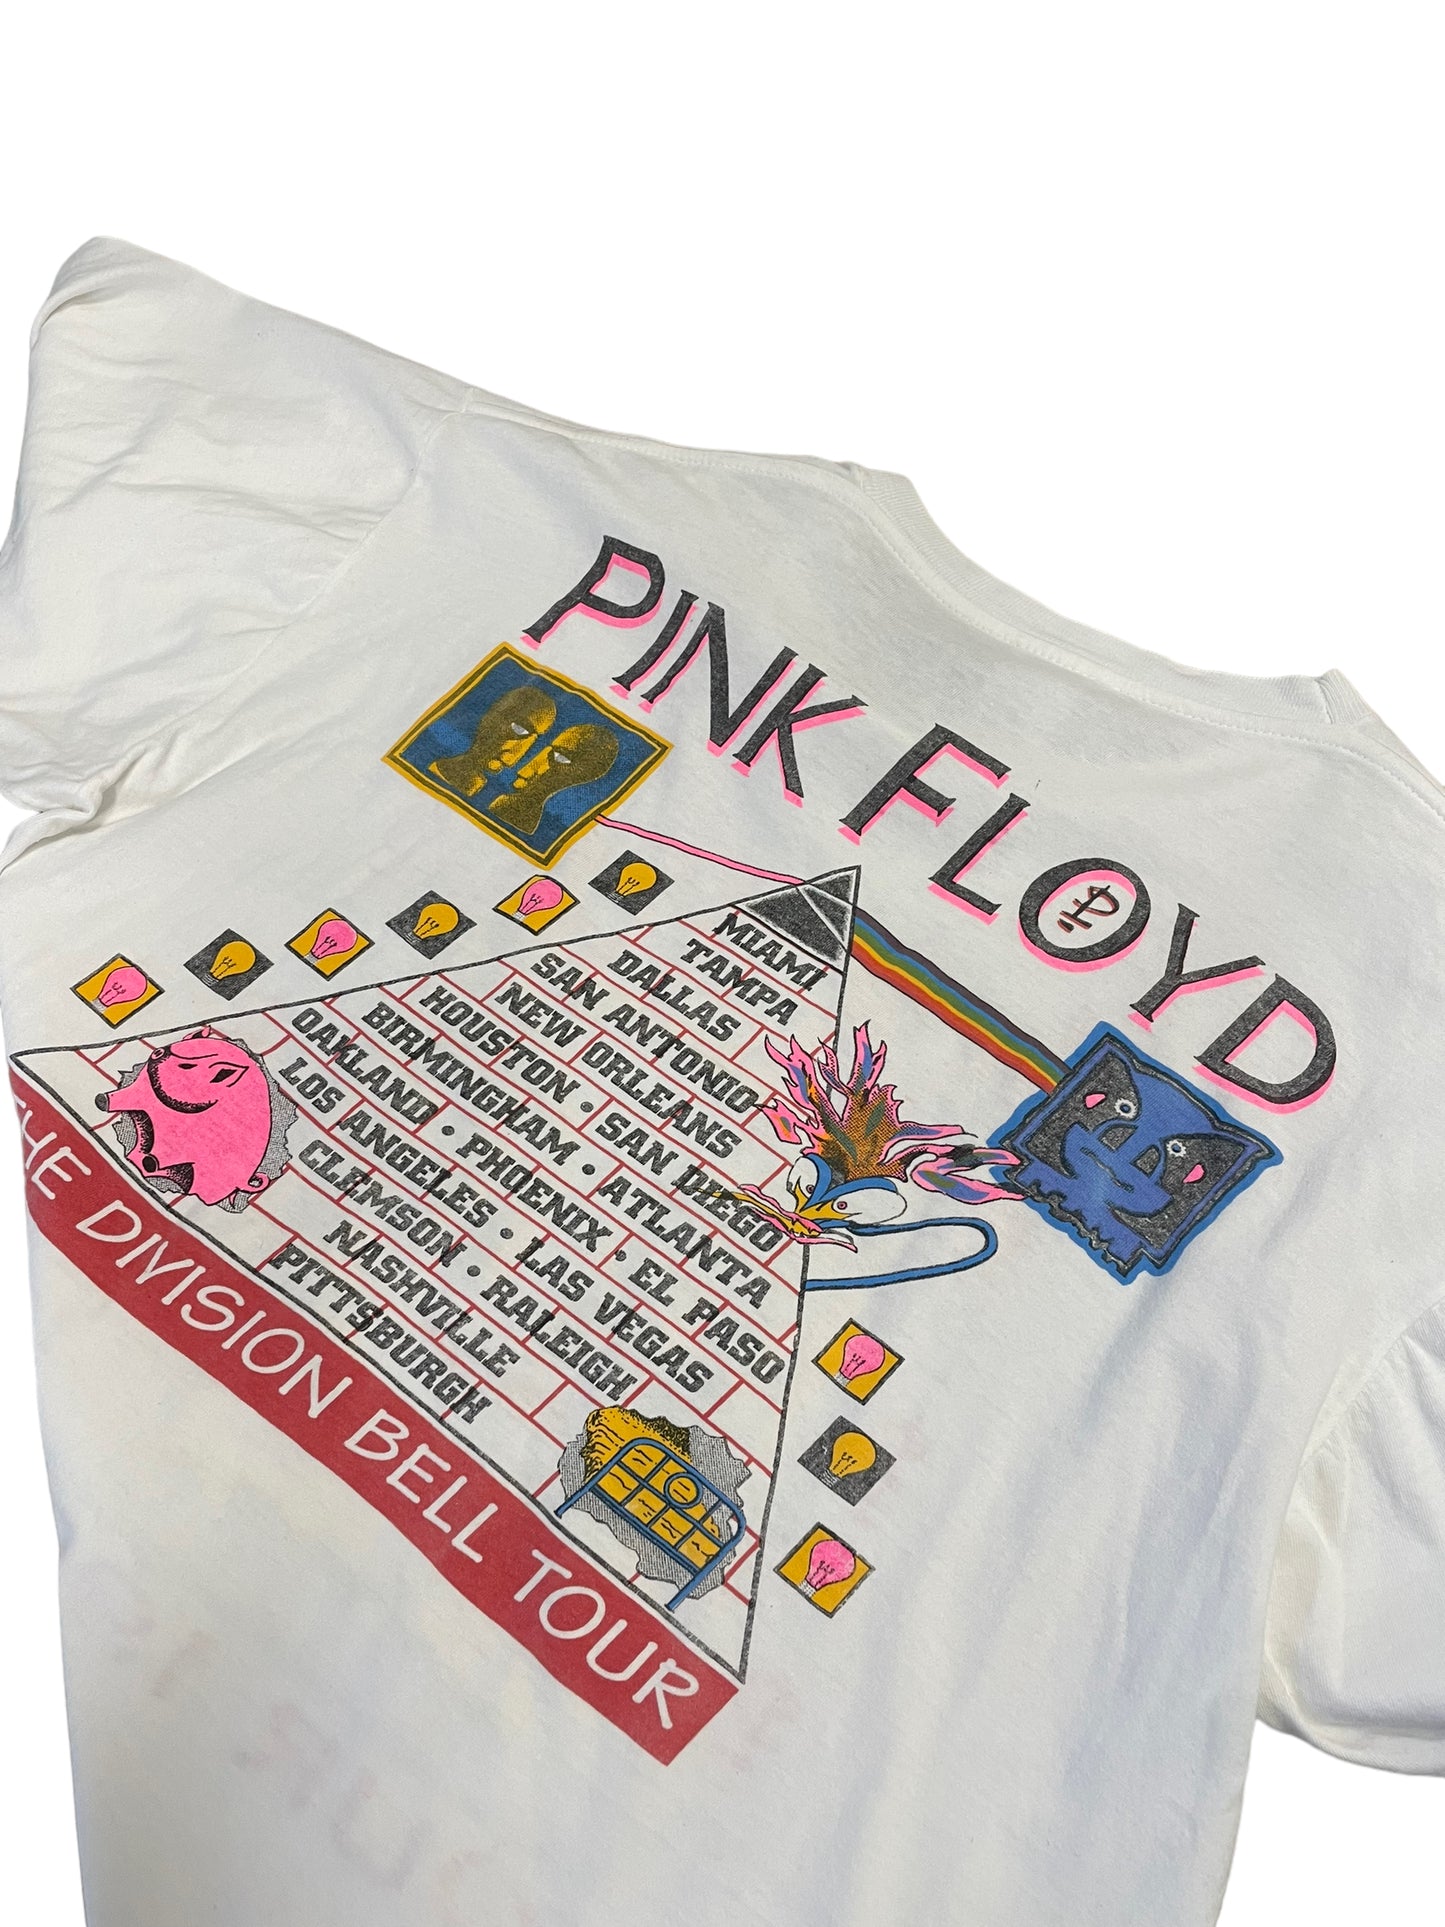 94’ PINK FLOYD XL